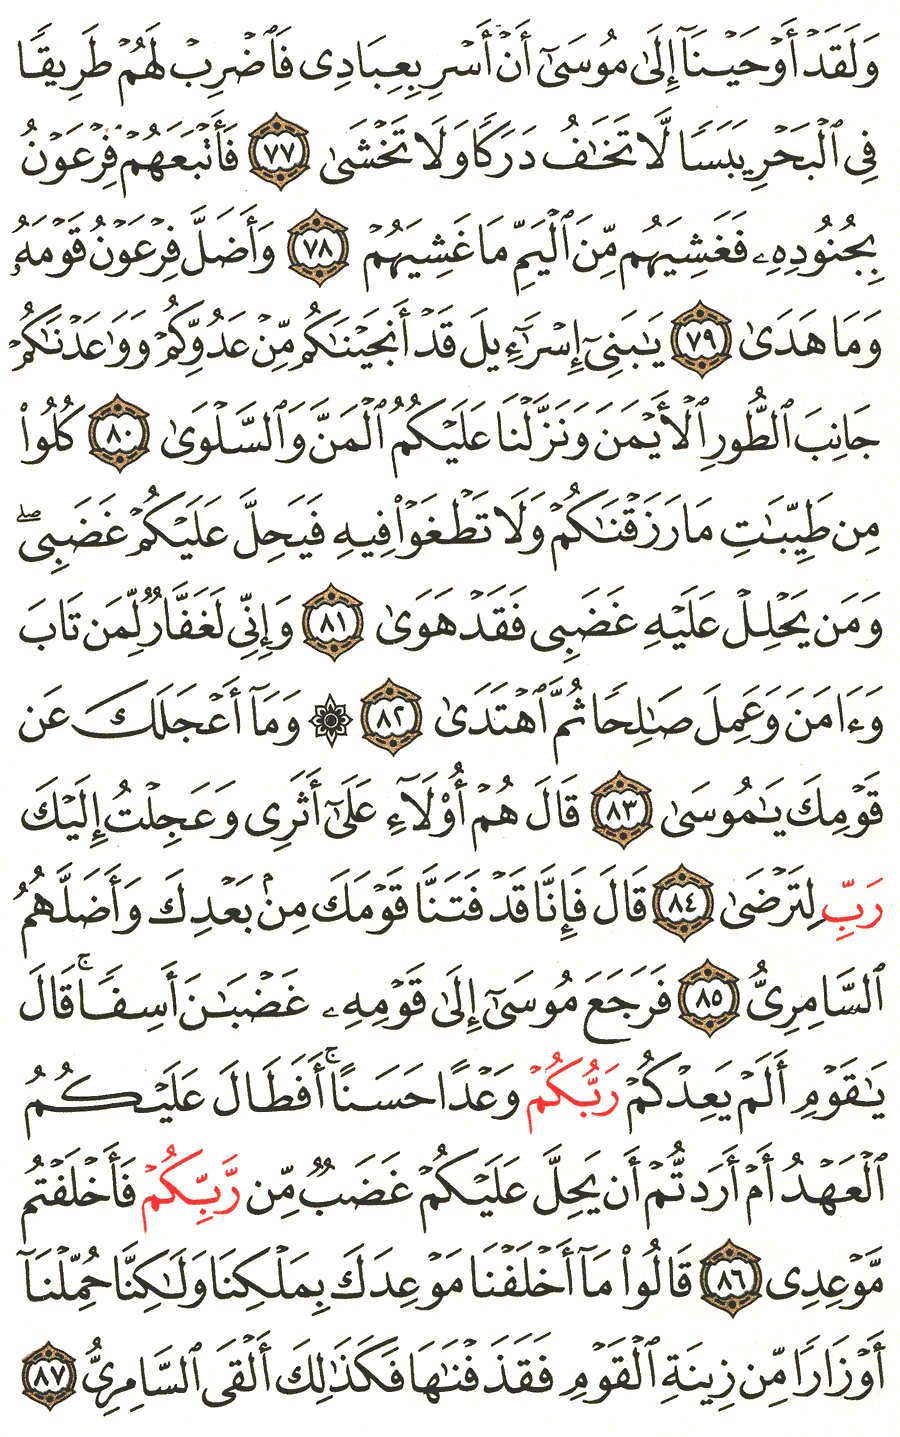 الصفحة رقم 317  من القرآن الكريم مكتوبة من المصحف